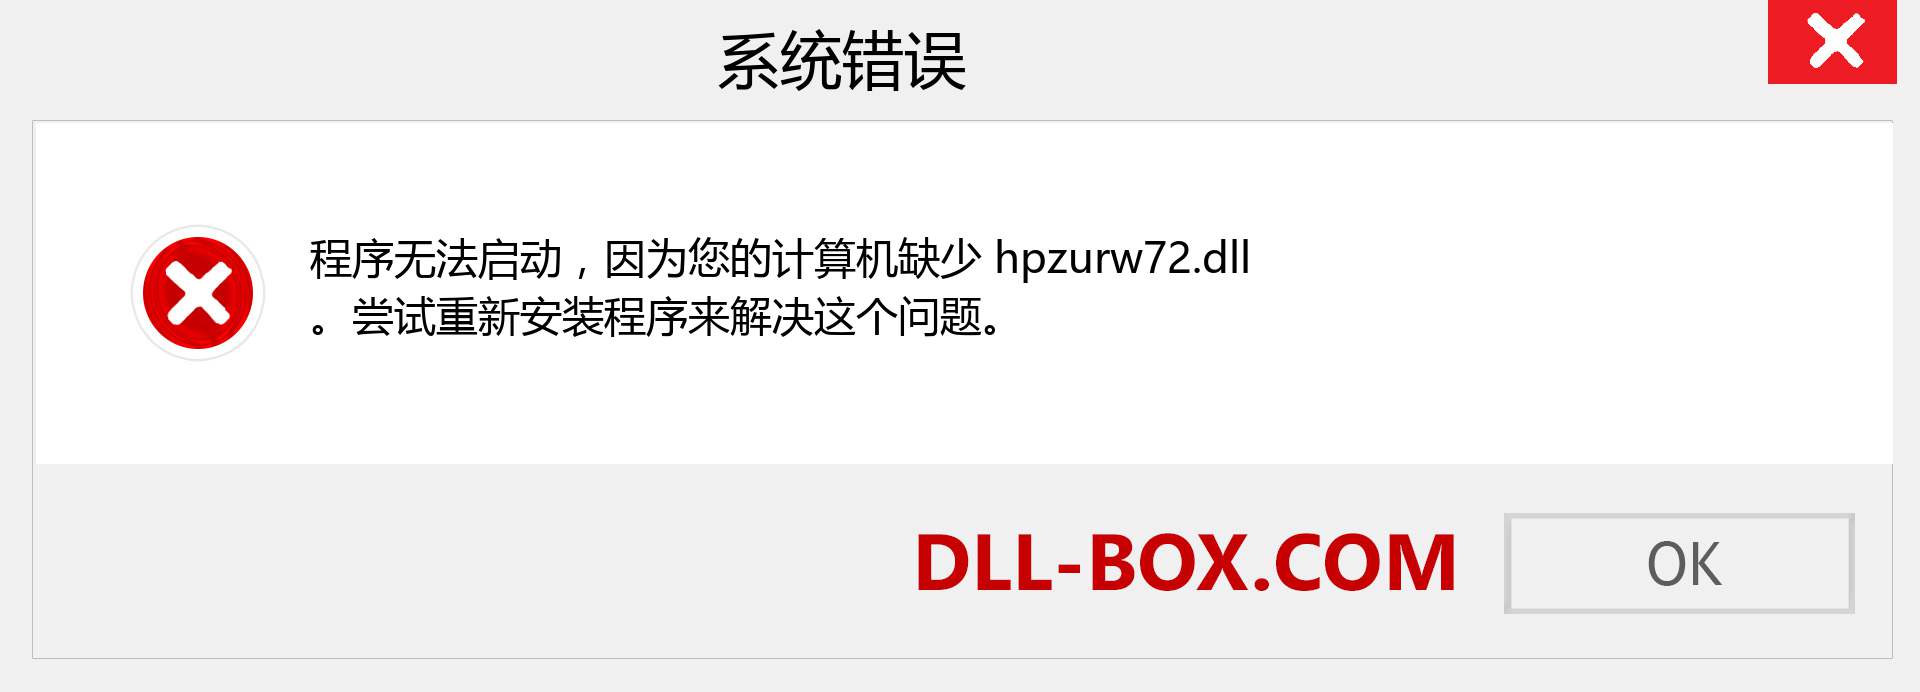 hpzurw72.dll 文件丢失？。 适用于 Windows 7、8、10 的下载 - 修复 Windows、照片、图像上的 hpzurw72 dll 丢失错误